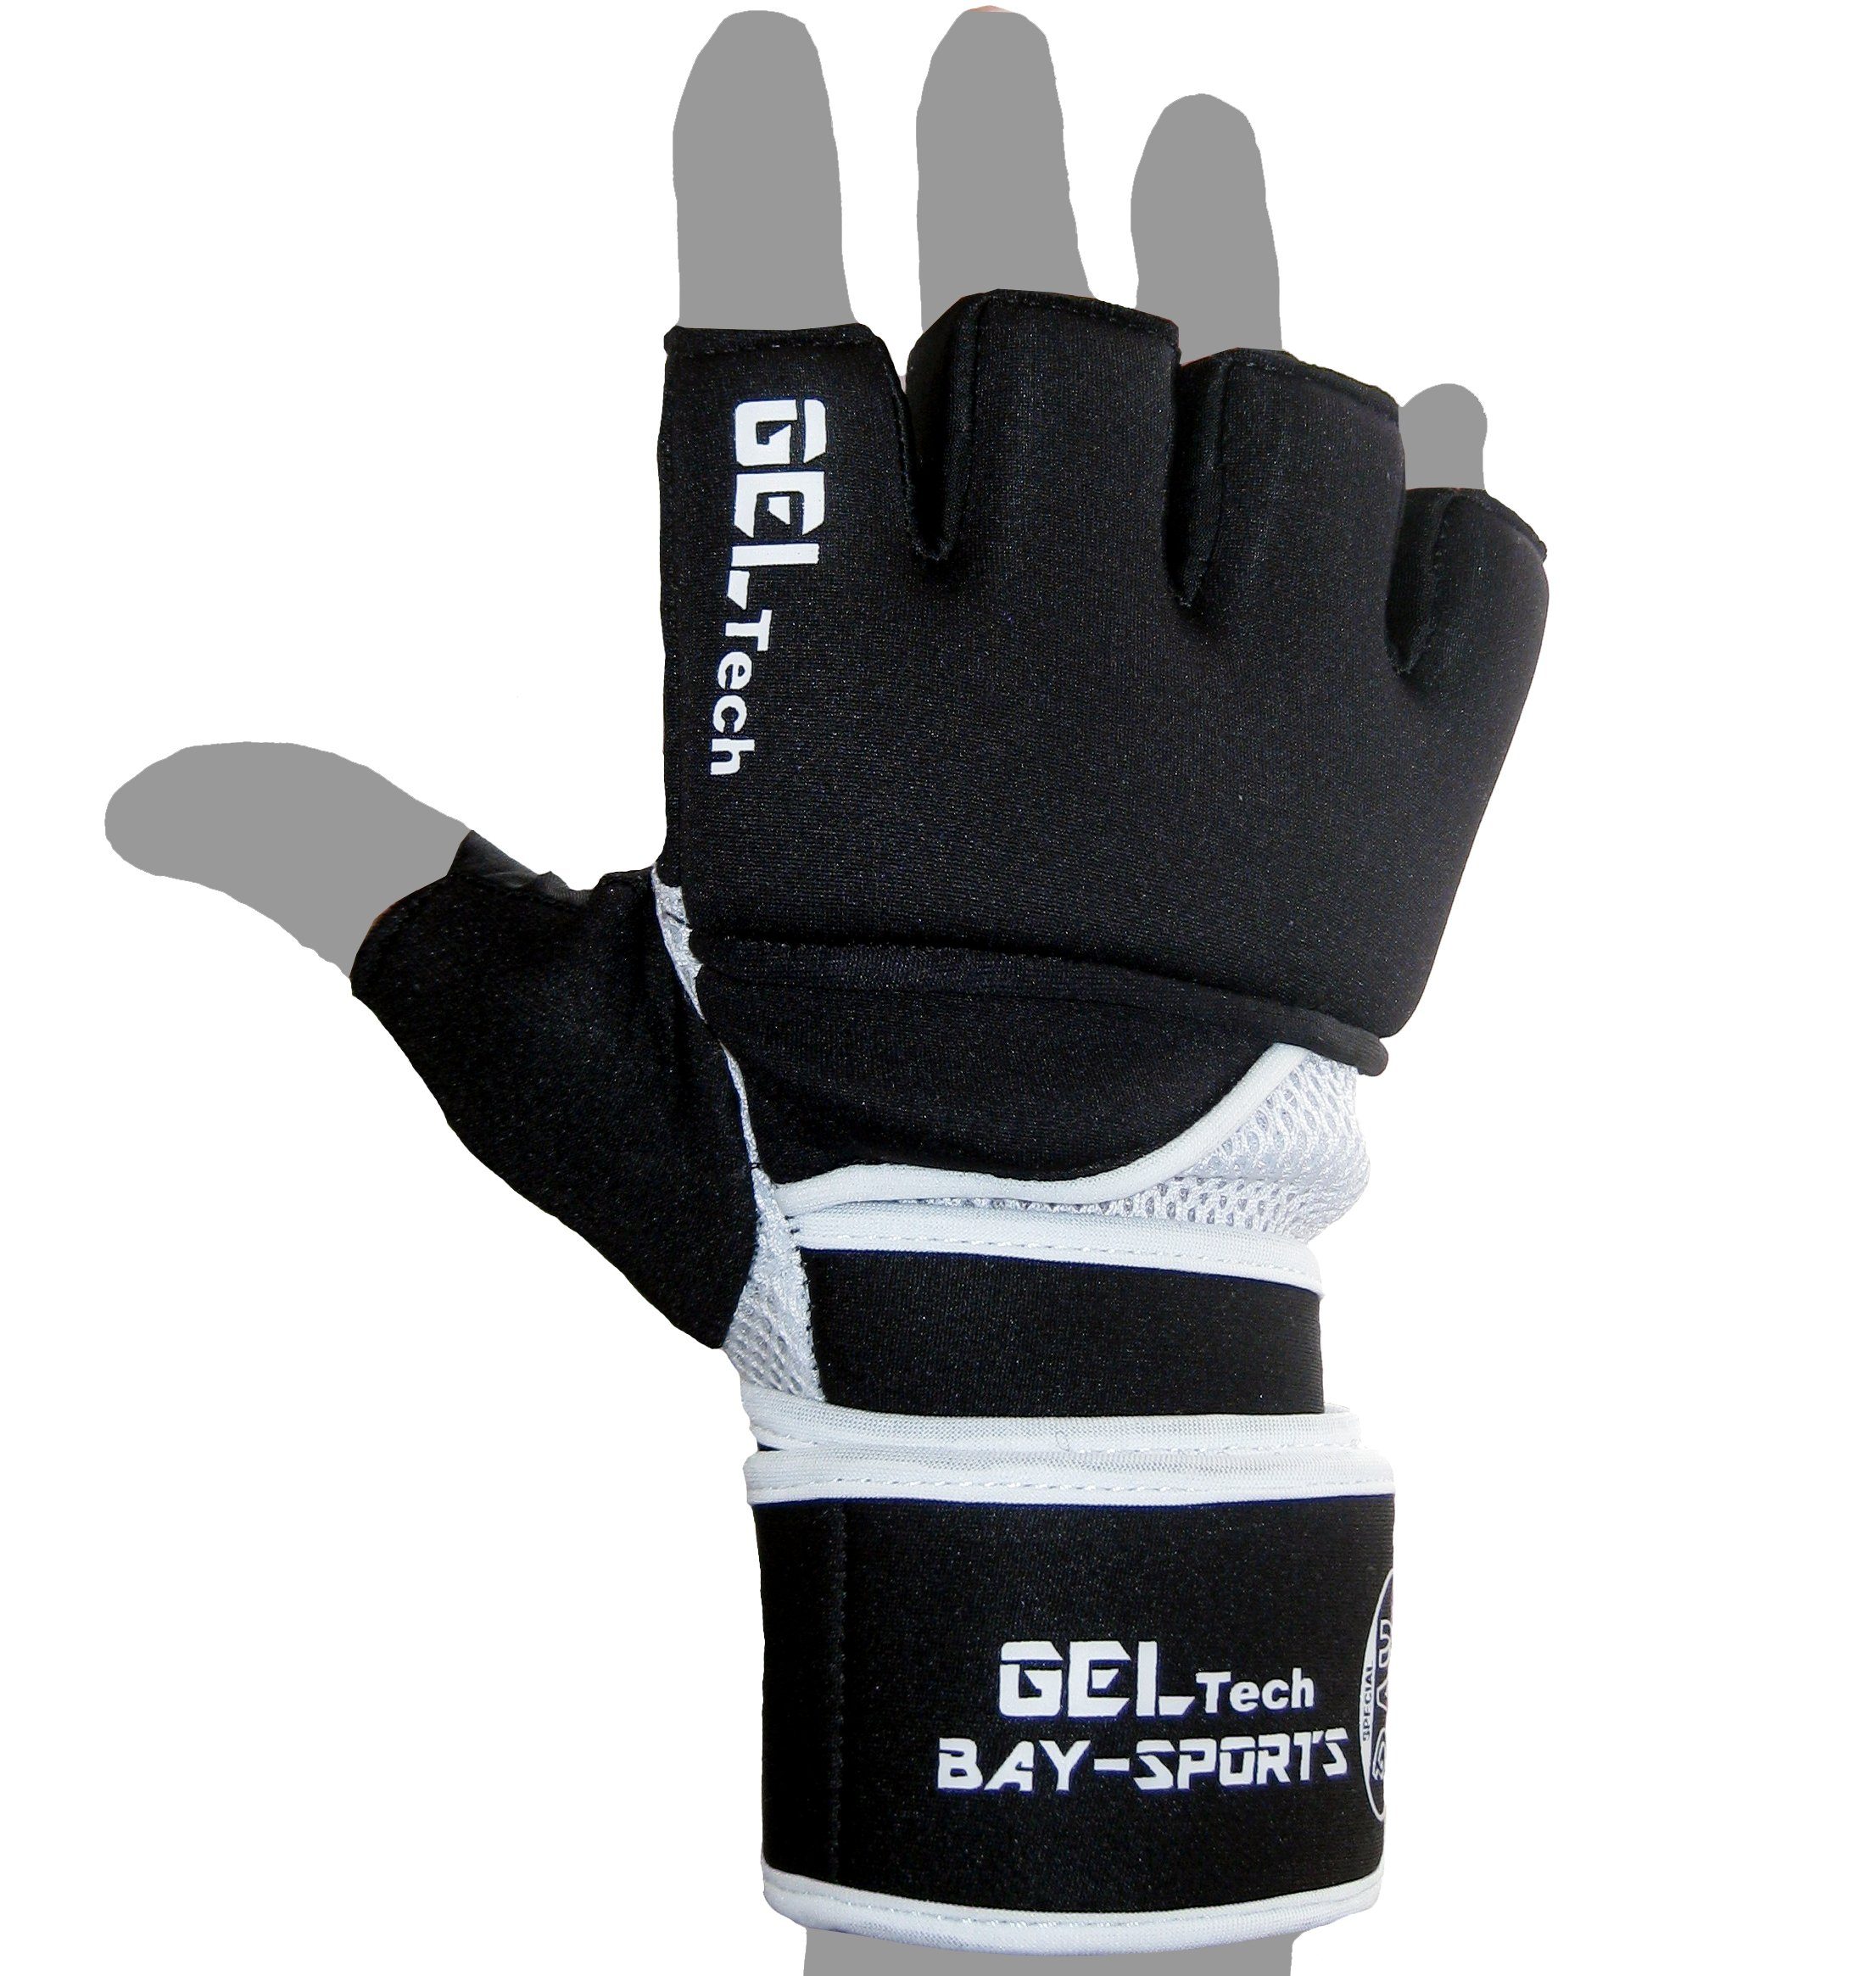 Kinder - Winsome Erwachsene Sandsack, Neopren und XS BAY-Sports Handschutz Handschuhe Boxhandschuhe Boxsack XL